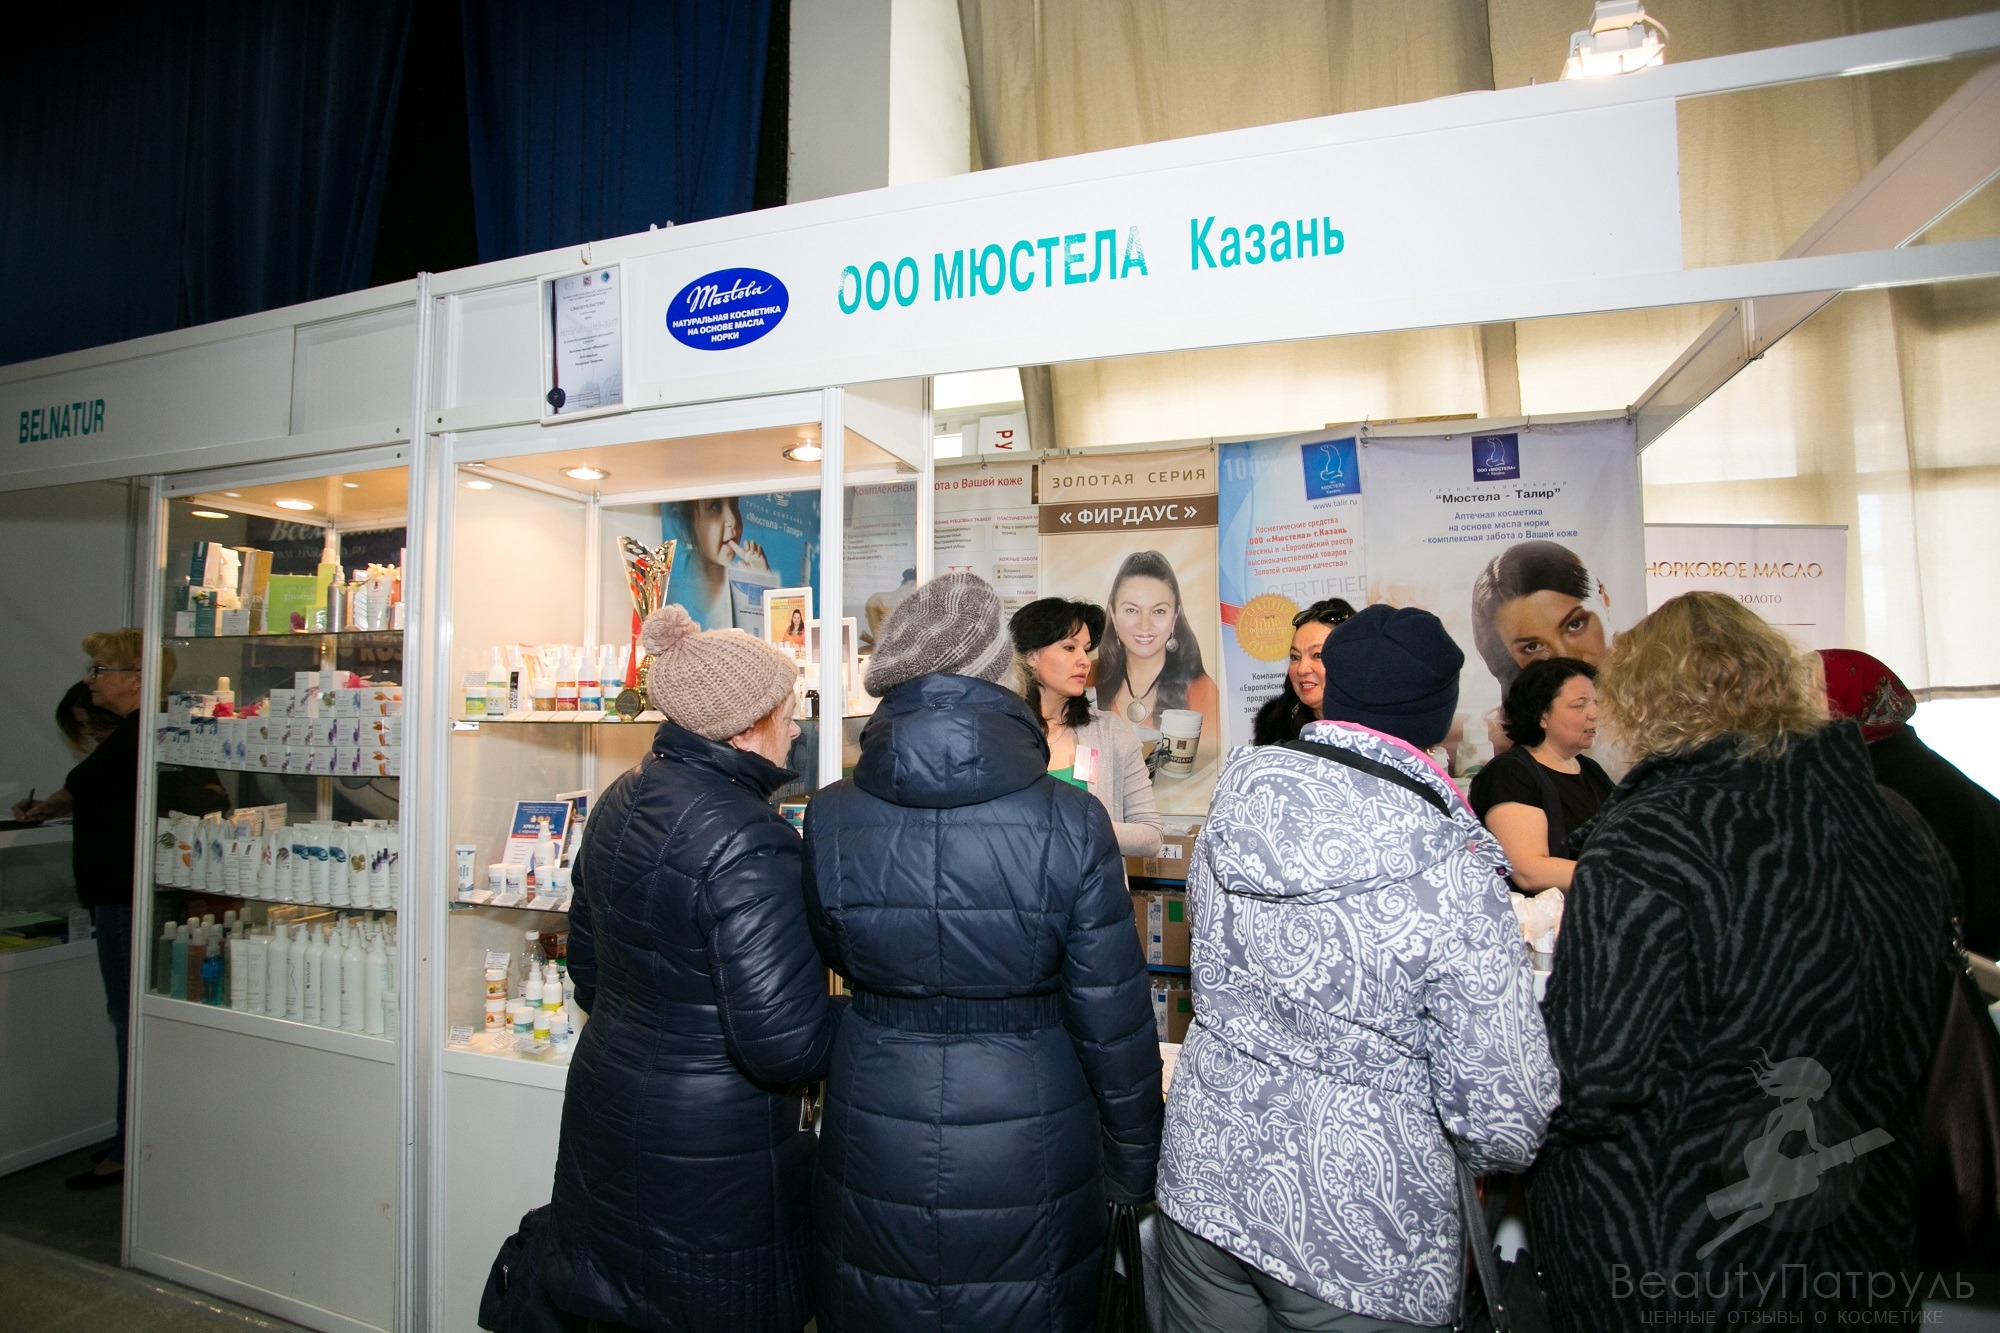 Небольшой стенд магазина товаров для салонов красоты Мюстелла (Казань) (1)